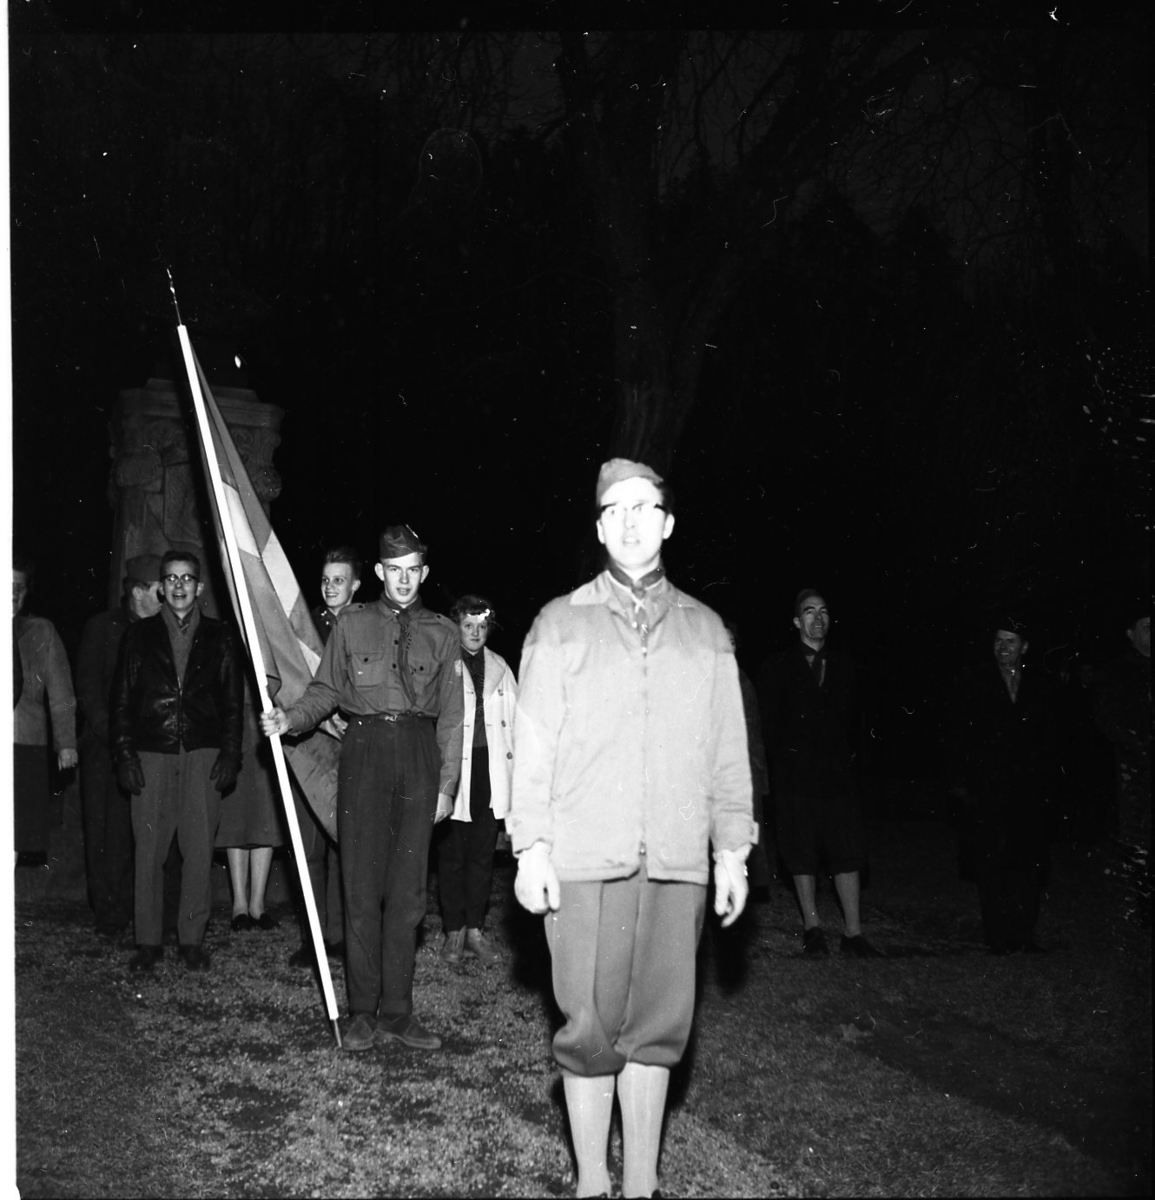 En scoutkår. I bakgrunden syns en scout hålla i en flagga.